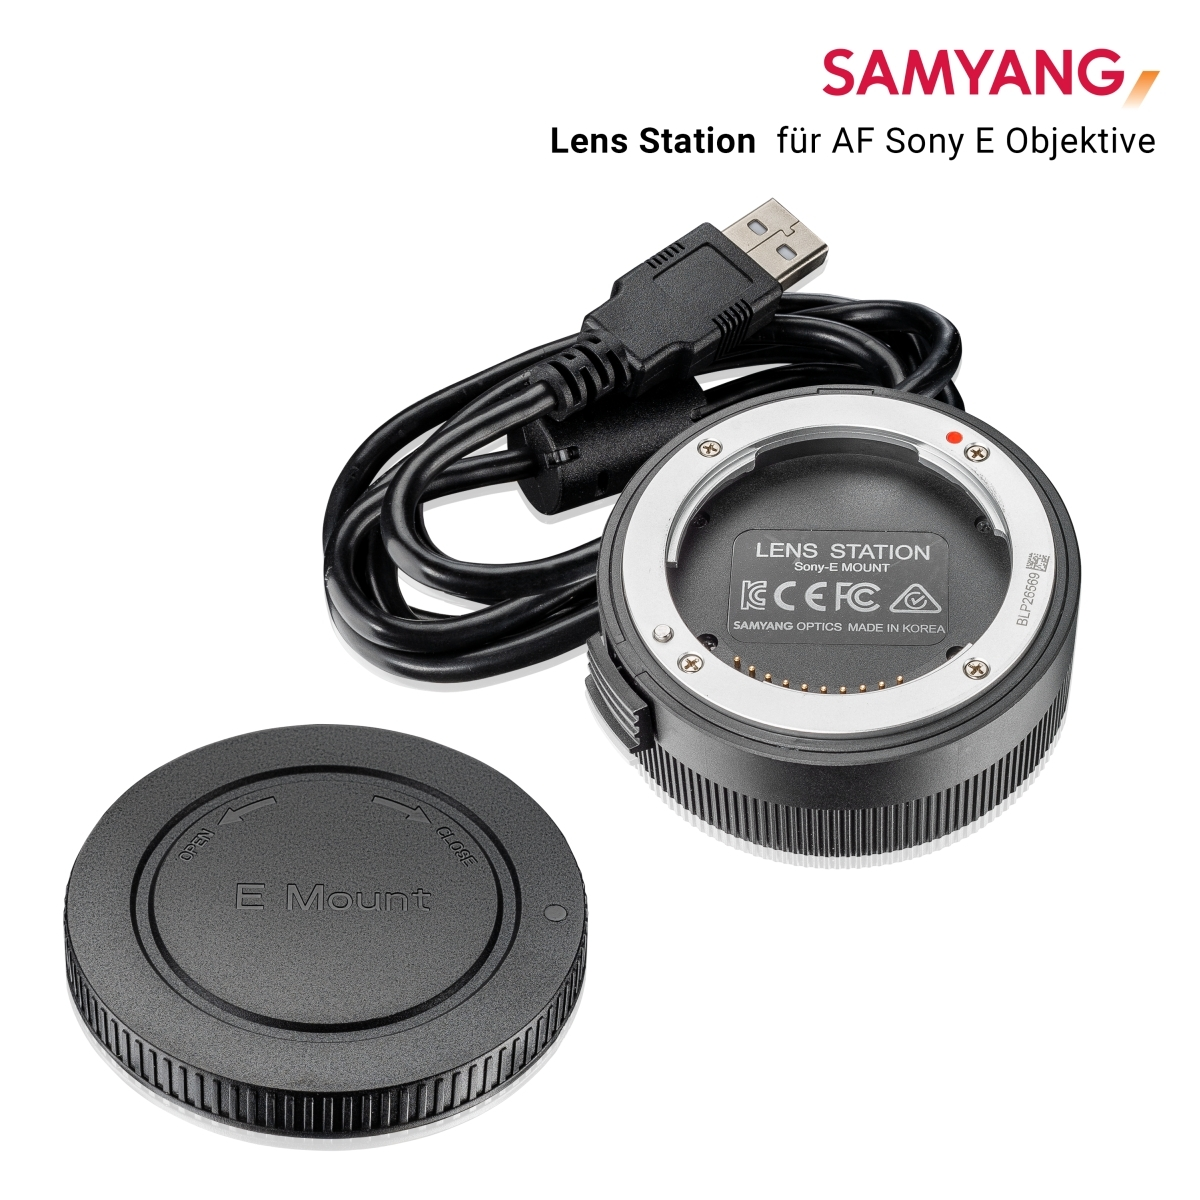 E-Mount, für Station für Lens Sony Sony schwarz SAMYANG millimetres Manager / (Lens weiß) 0 E AF